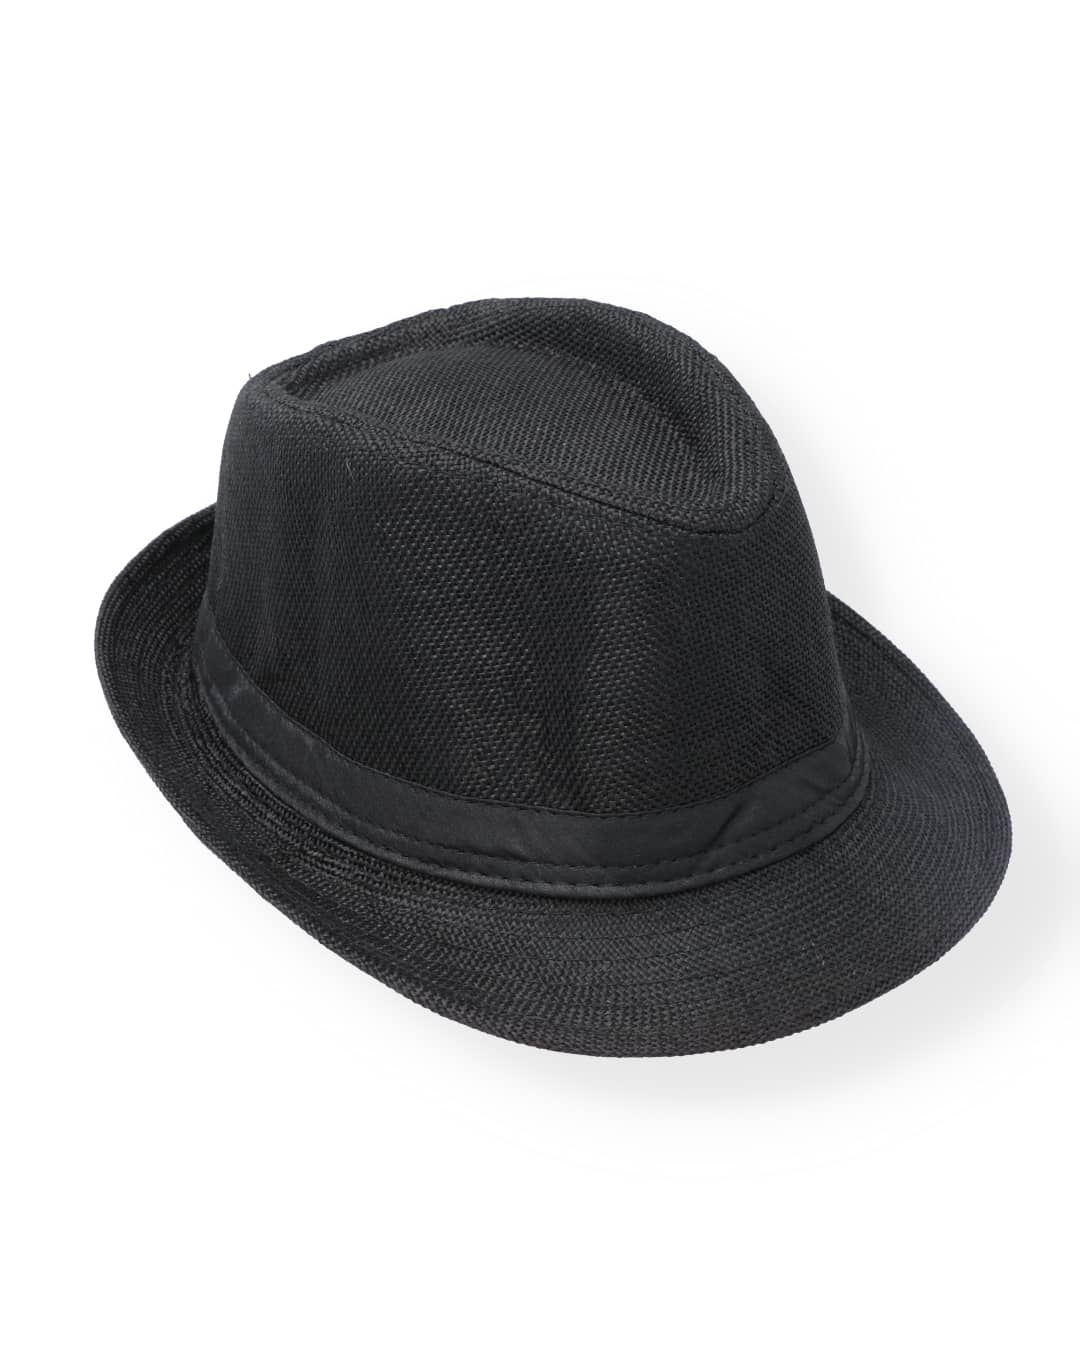 BLACK GENTLEMAN CAP